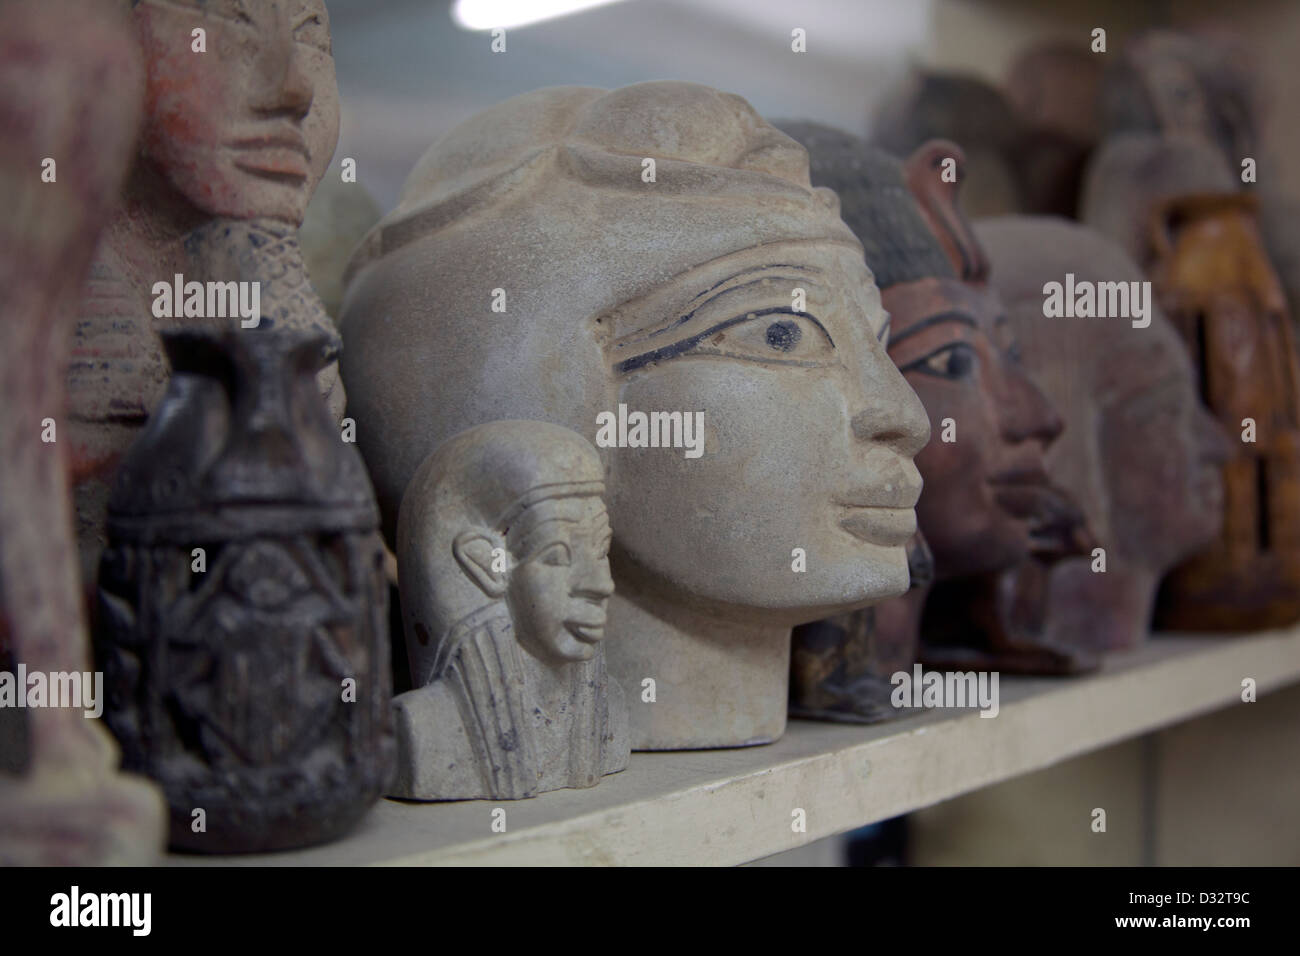 Stone carving negozio di souvenir dei faraoni, gatti, scarabei e gli dèi sulla vendita in un turista regali a Luxor Eqypt Foto Stock